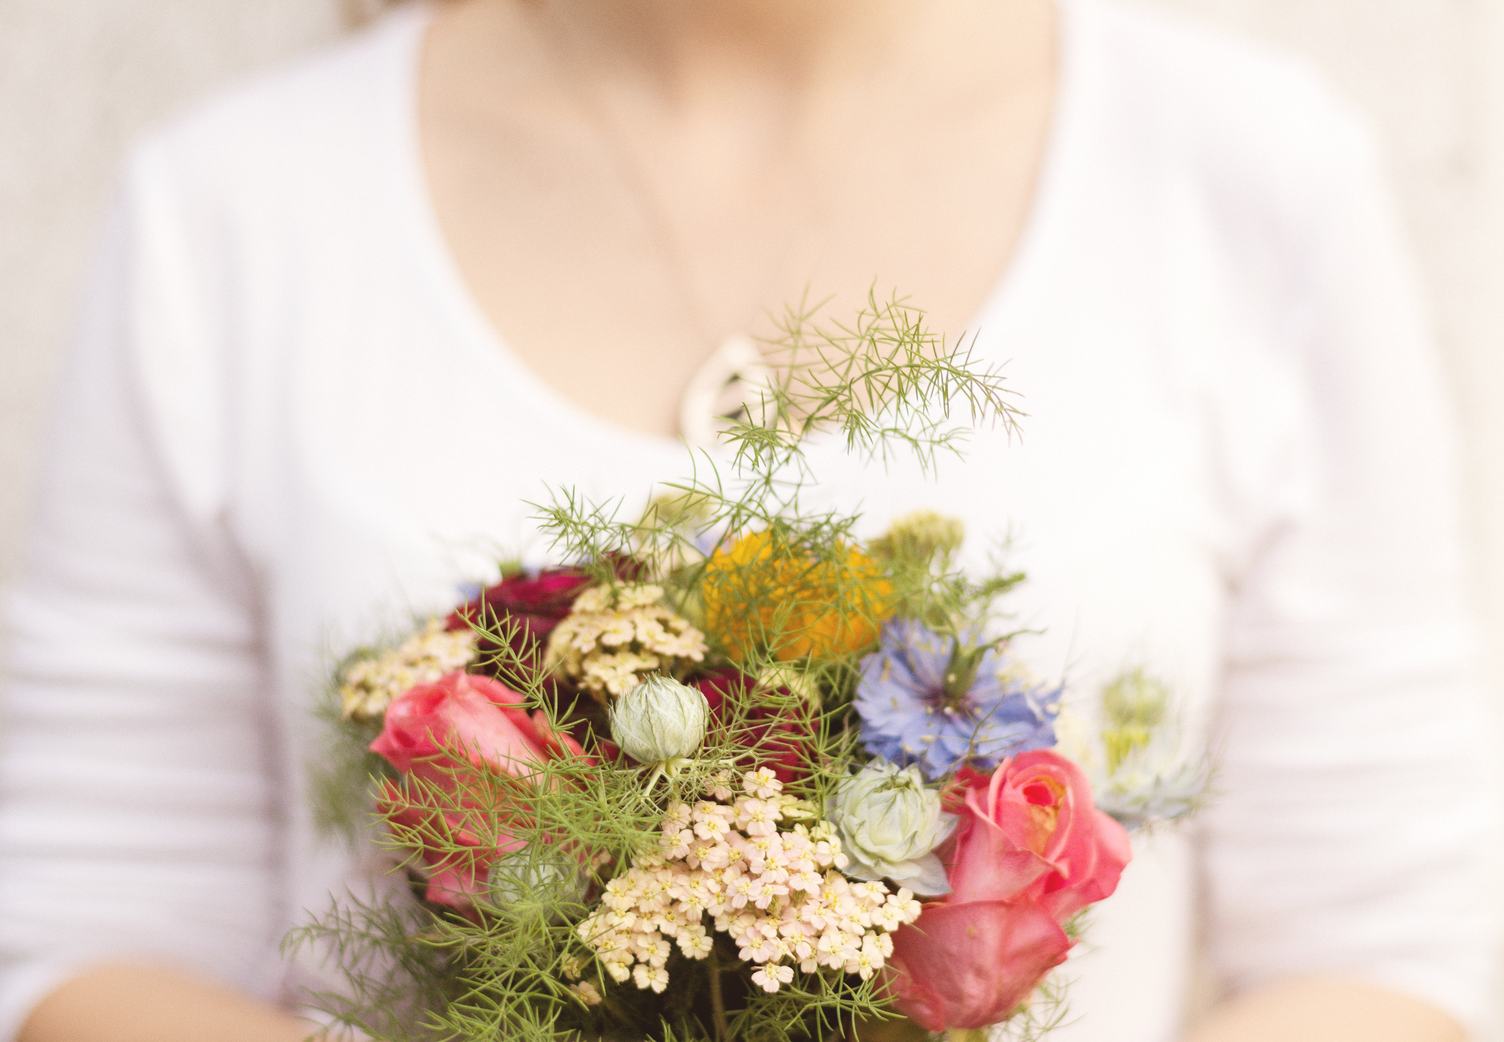 Wedding Bouquet in Bride's Hands